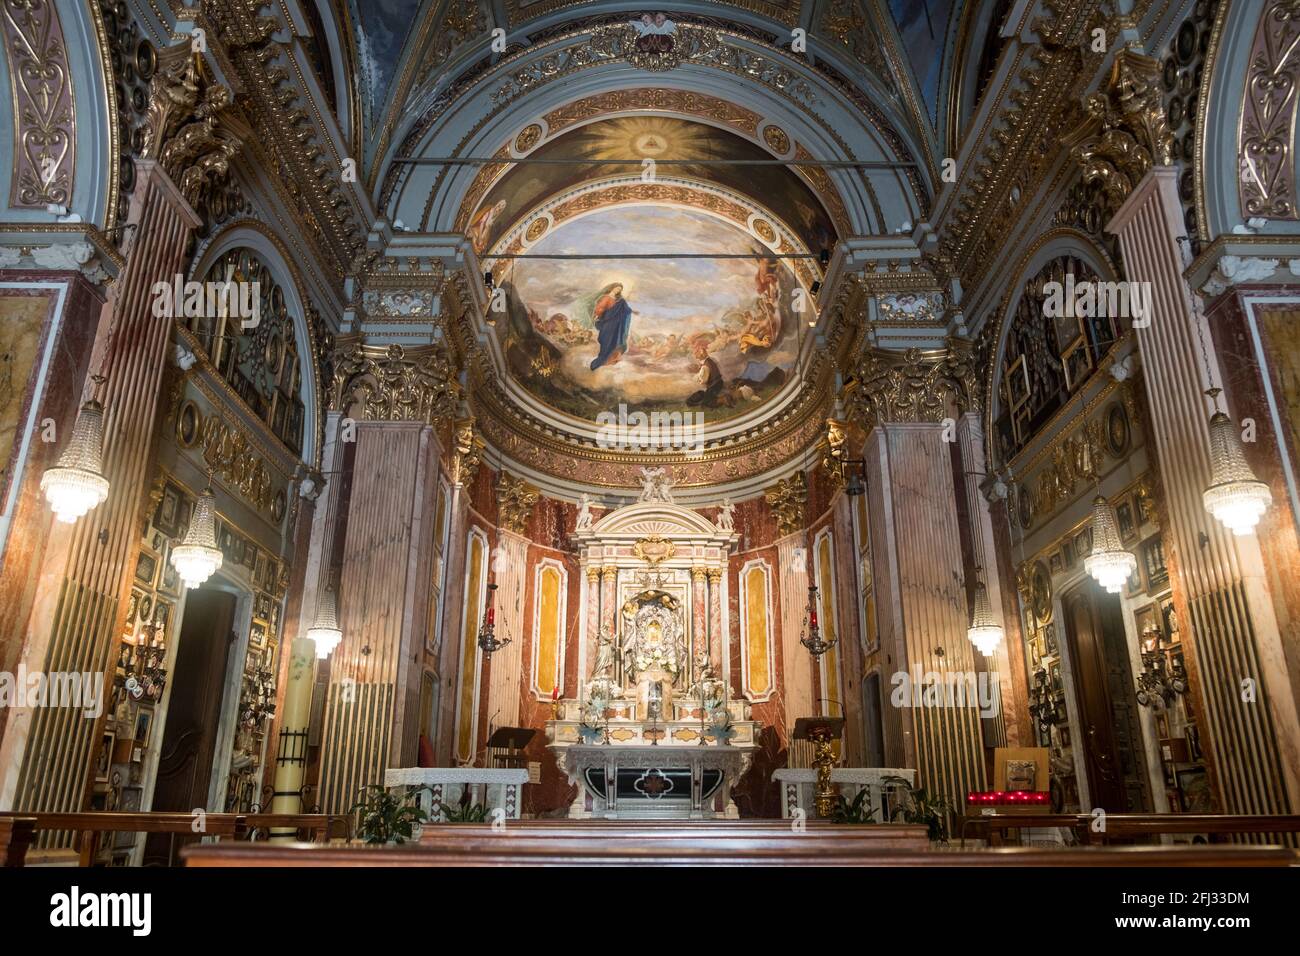 Das Innere des Heiligtums unserer Lieben Frau von Montallegro, mit reicher Dekoration, dem zentralen Altar und einem Fresko. Stockfoto